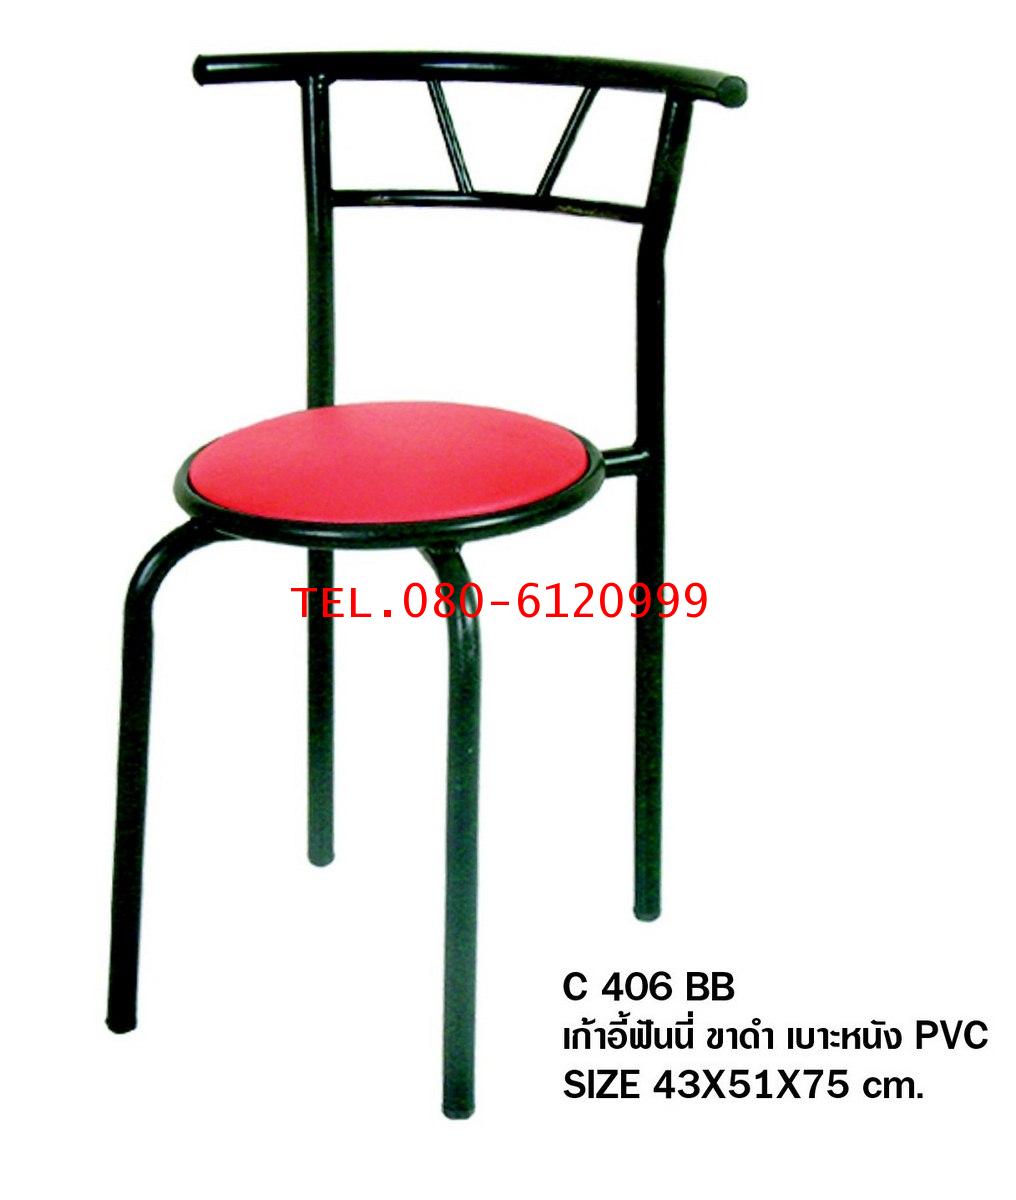 pmy29-19 เก้าอี้ฟันนี่ ขาดำ เบาะหนัง PVC